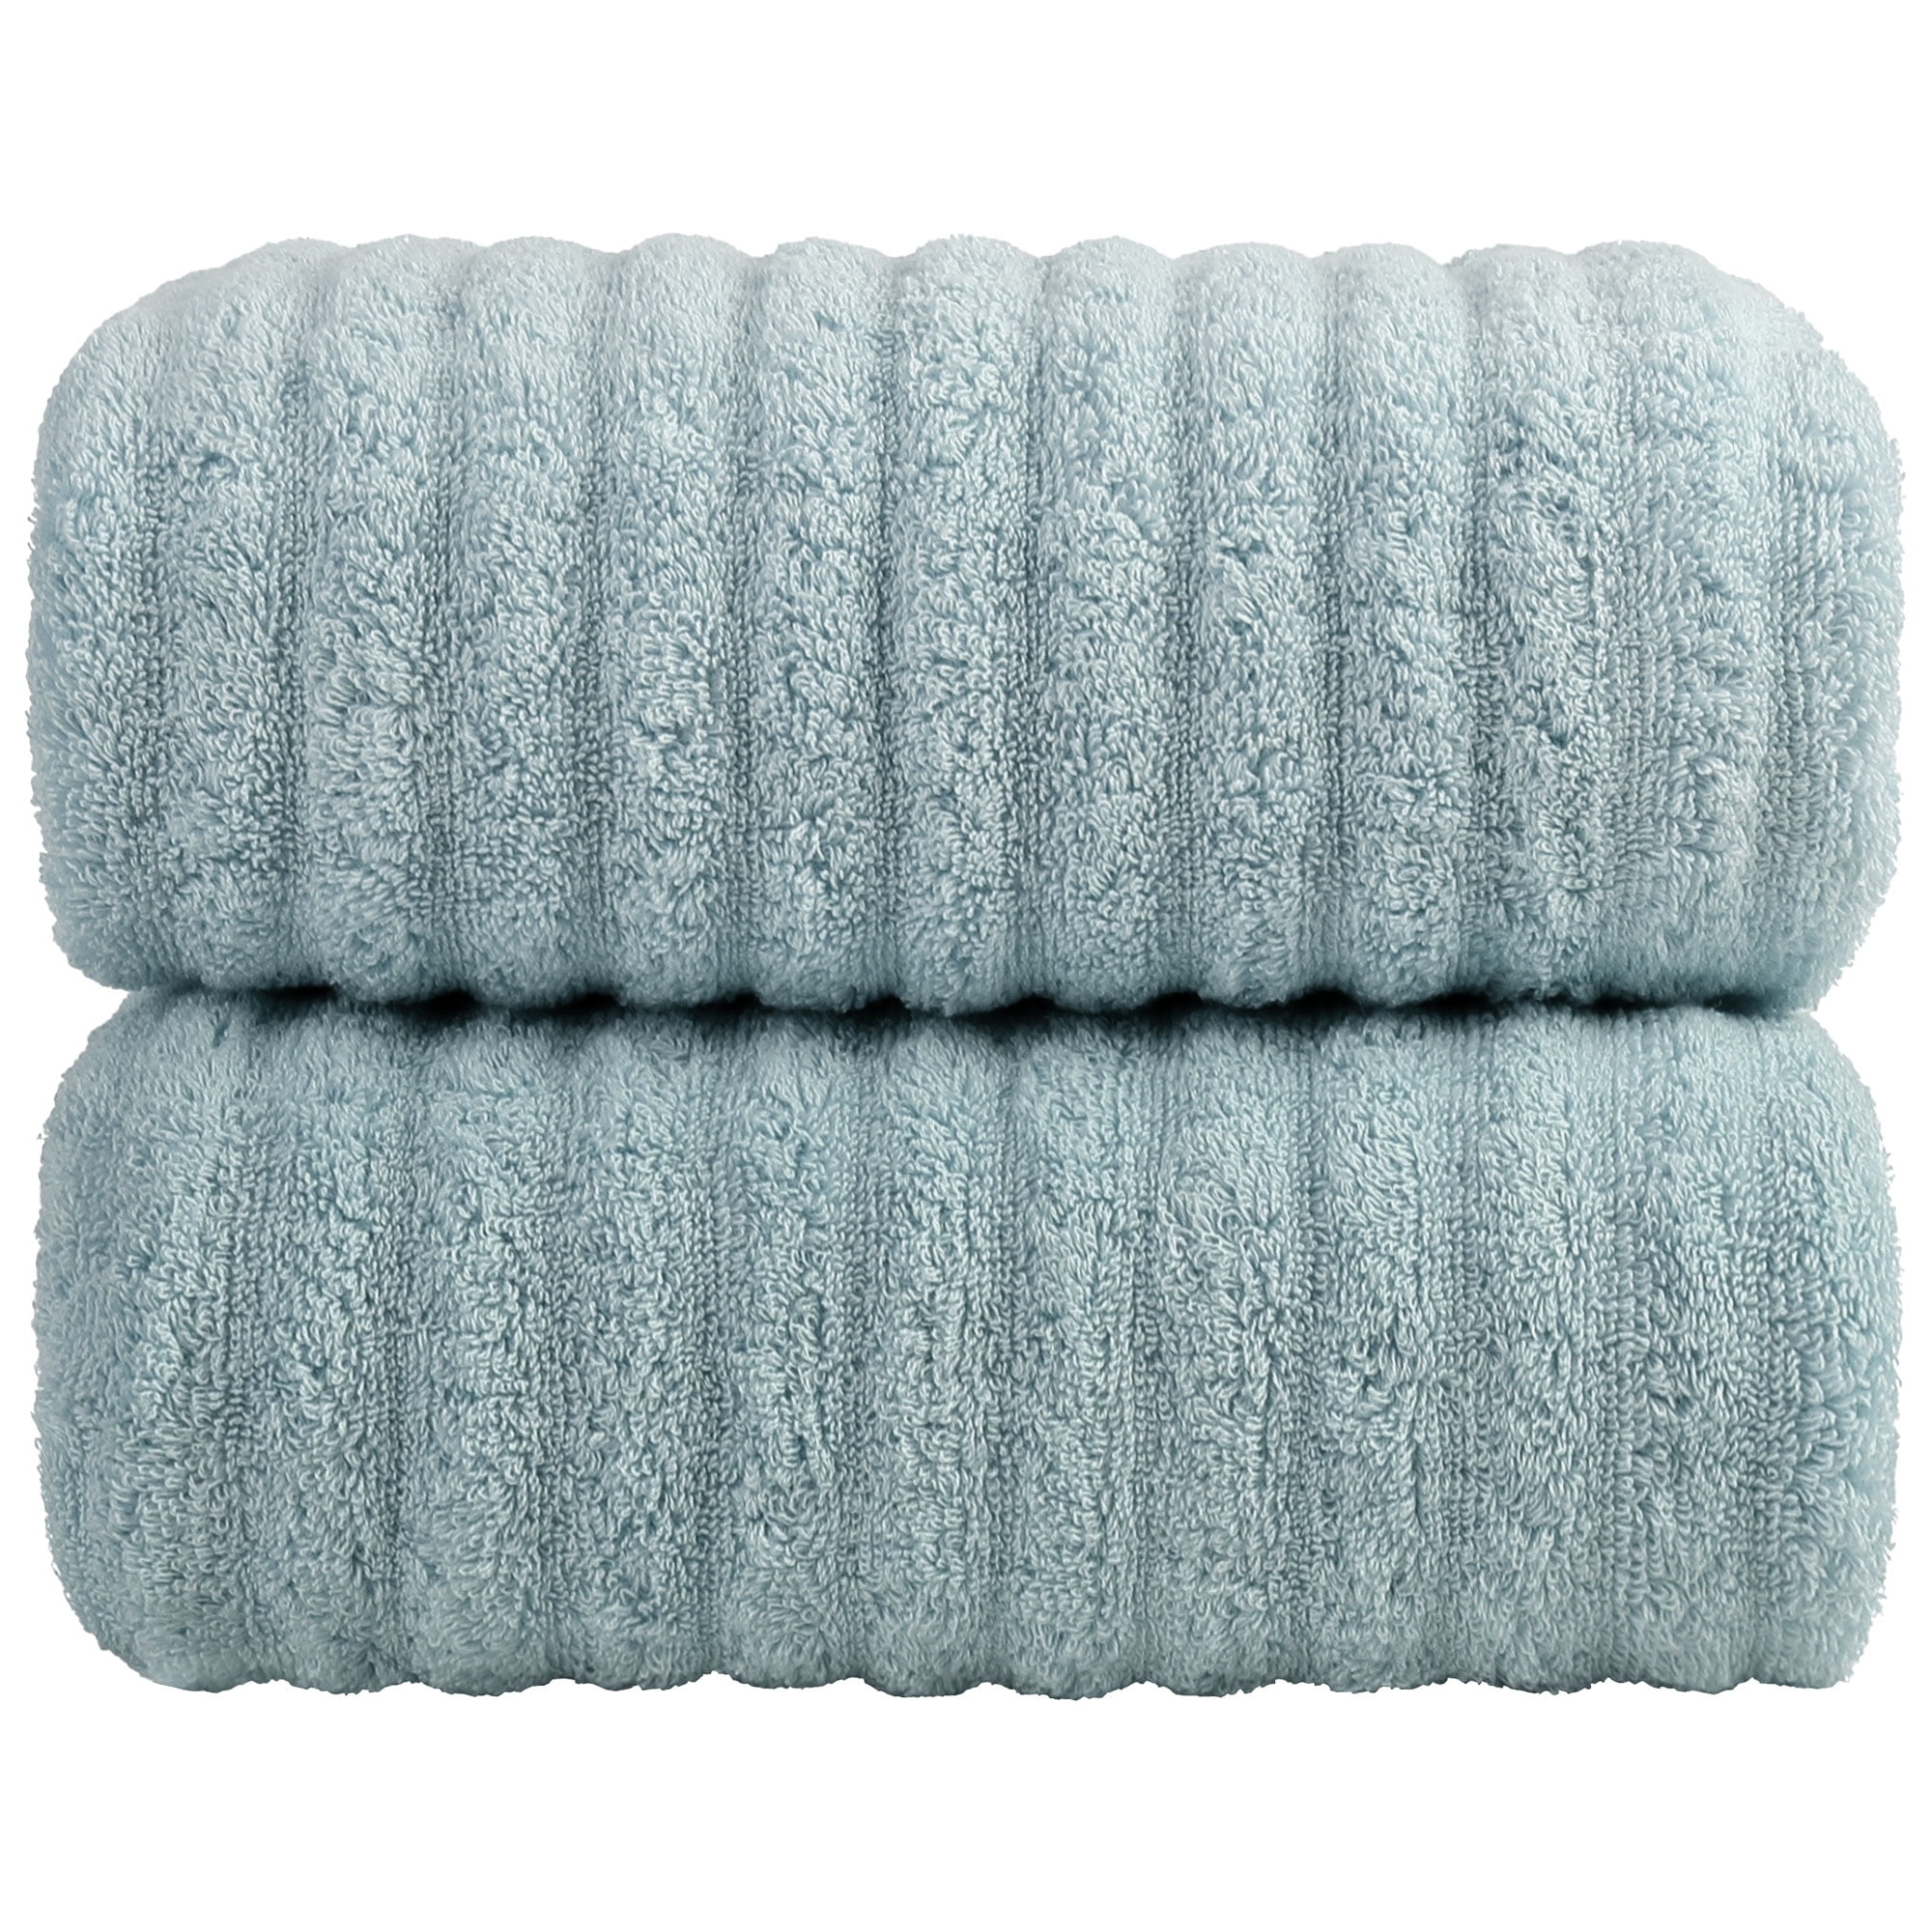 Unique Bargains 2-Pack 100% Cotton Absorbent Bath Towels 27 x 55 Blue